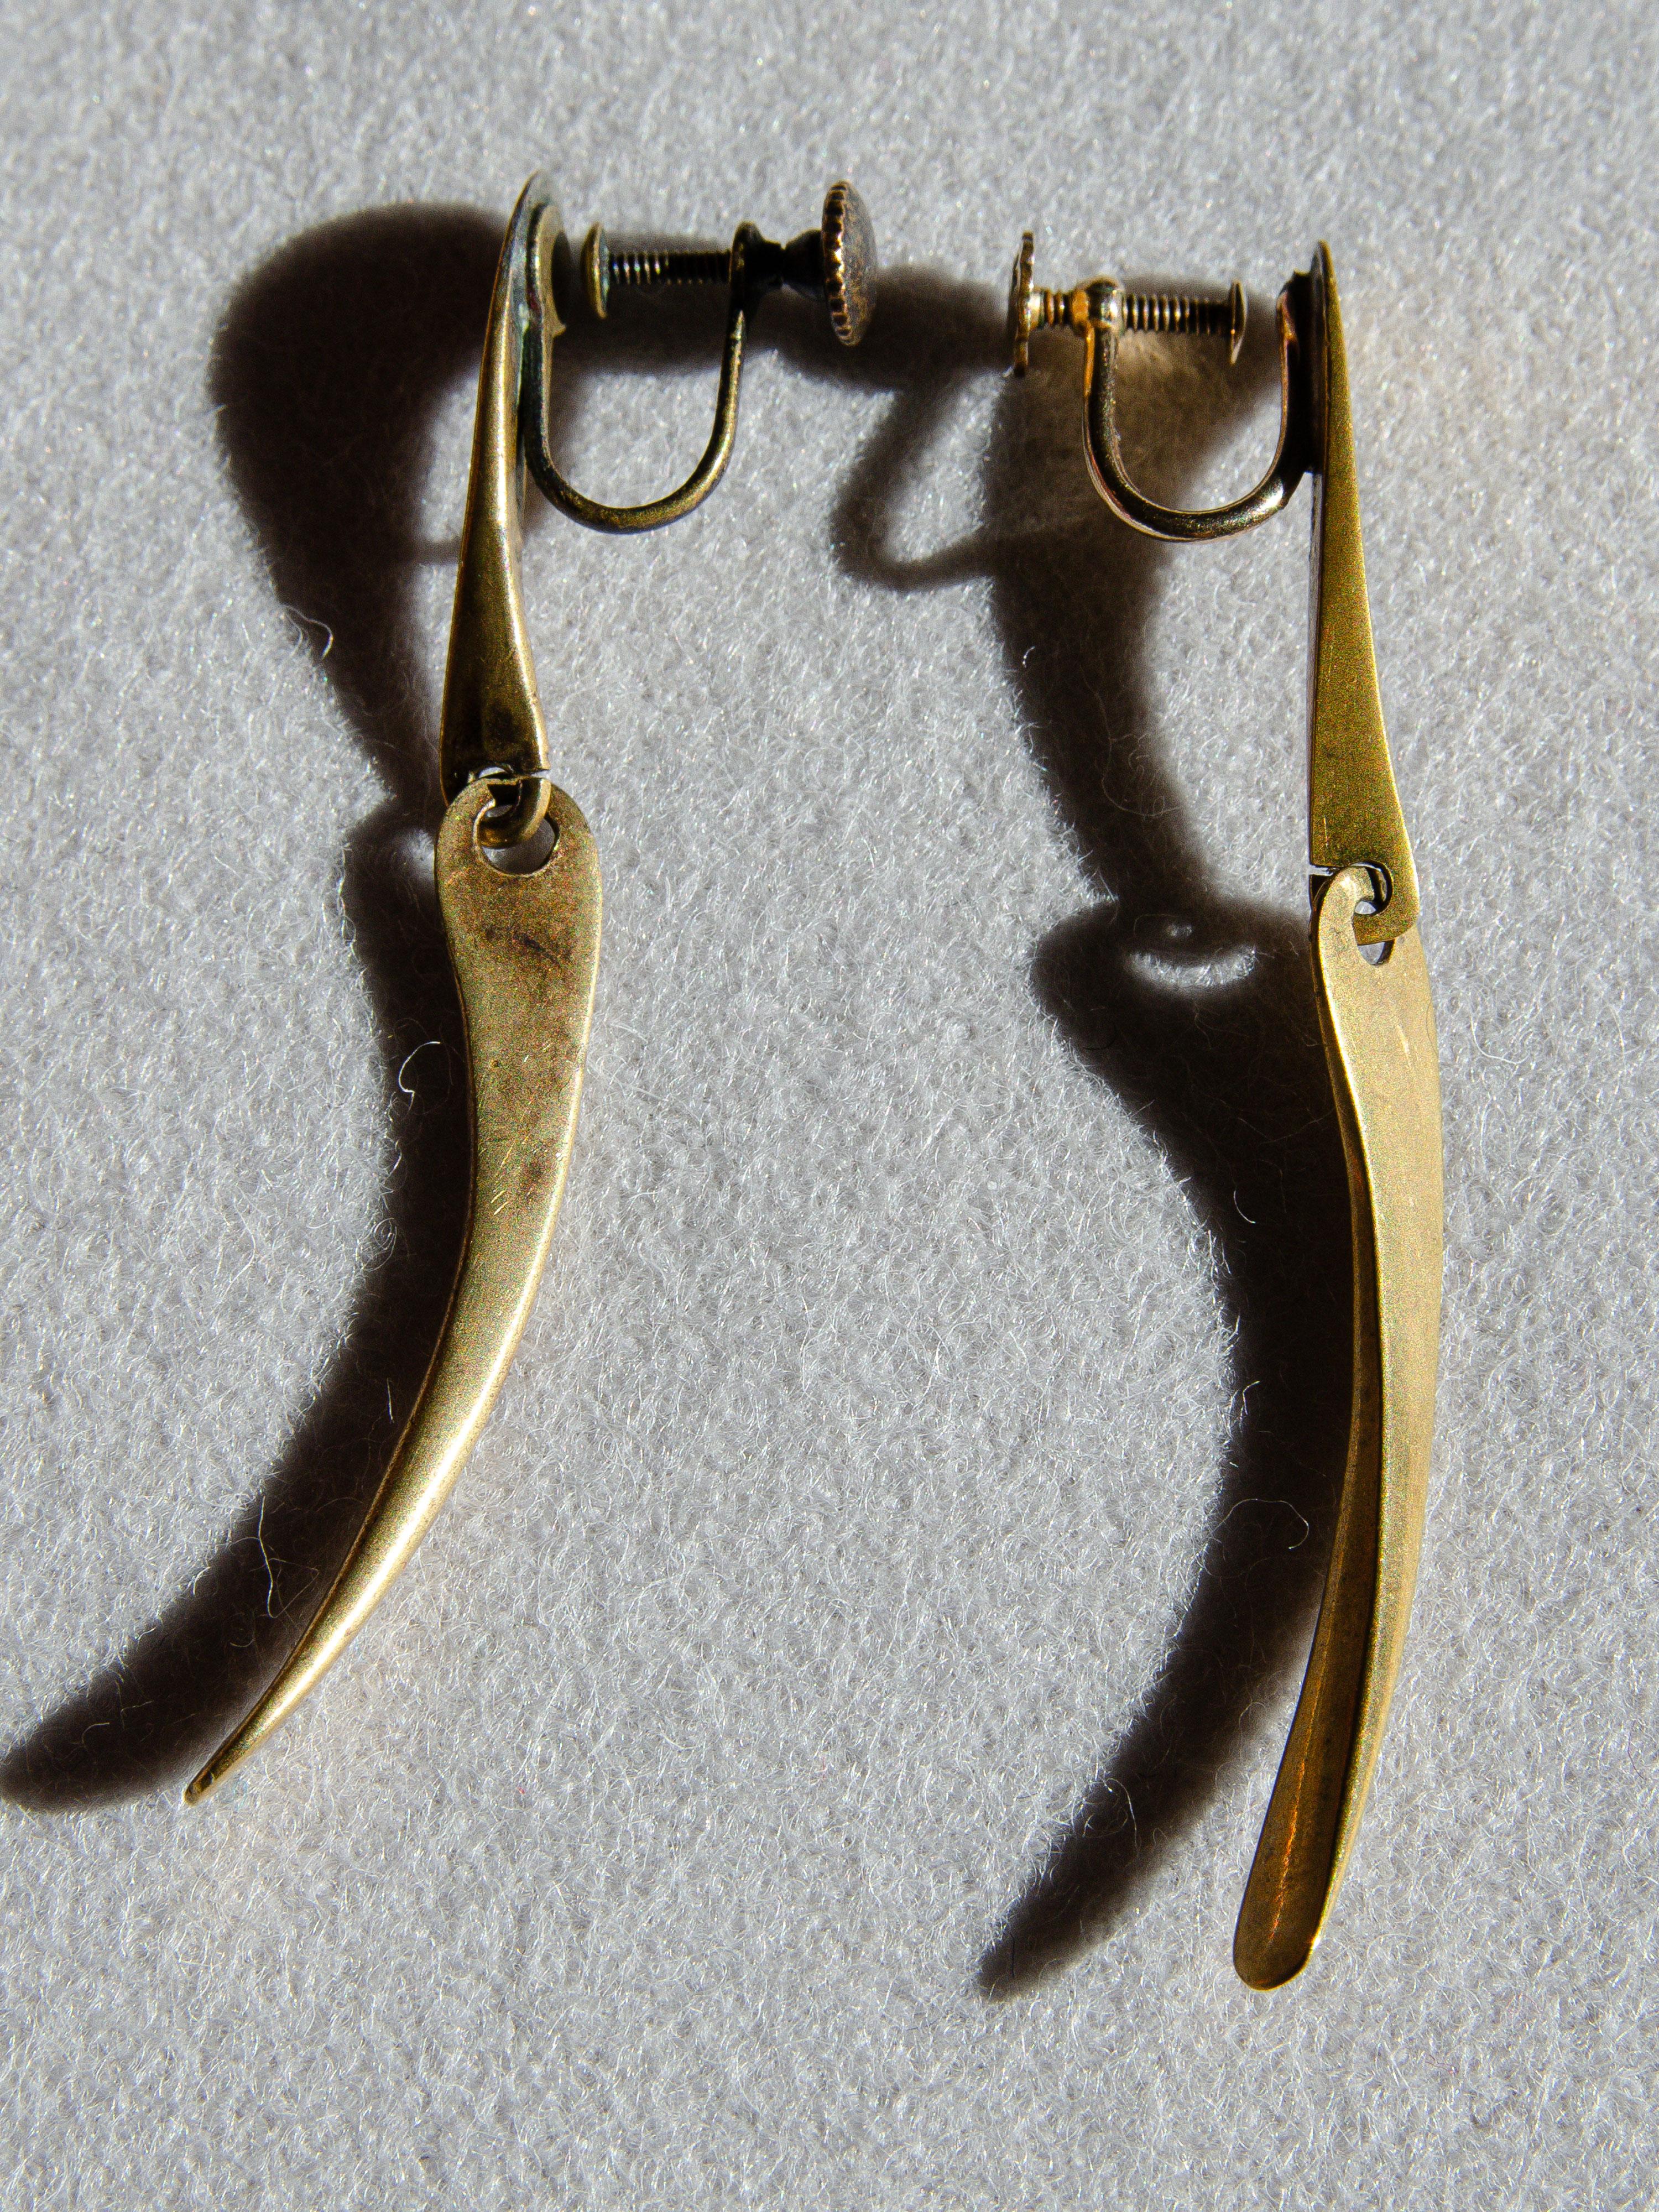 Cette rare paire de boucles d'oreilles à deux niveaux en laiton a été conçue par le bijoutier moderniste de Greenwich Village, Art Smith, dans les années 1950. Jewell est considéré comme l'un des maîtres joailliers du mouvement moderniste du milieu